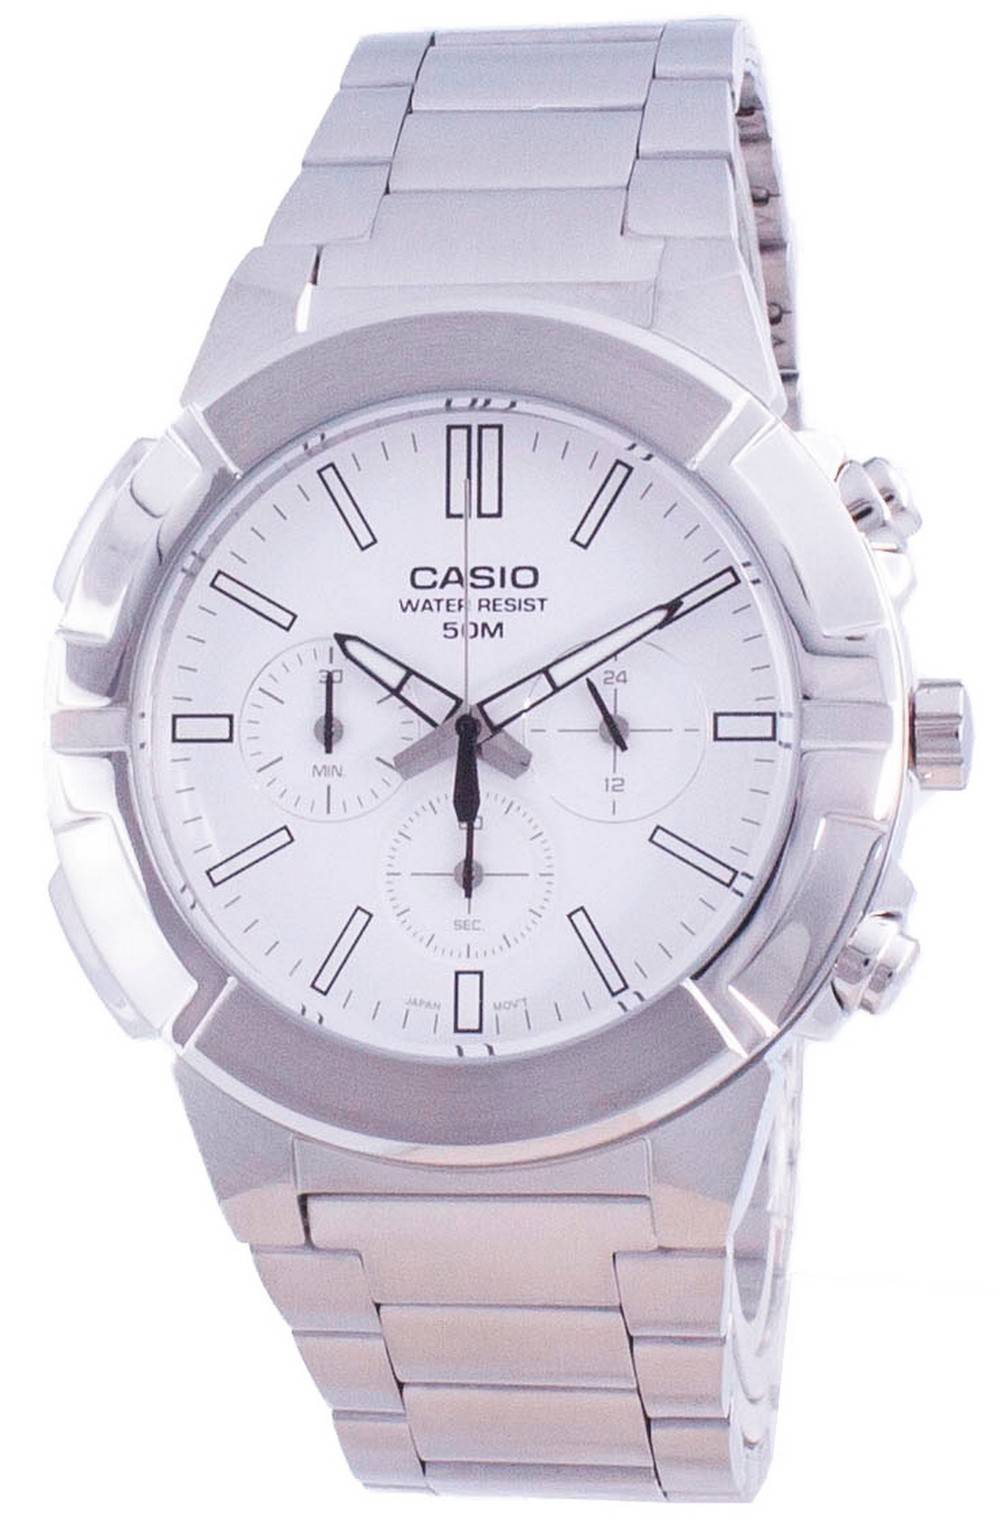 Casio Multi Hands Analog Quartz Chronograph MTP-E500D-7A Men's Watch